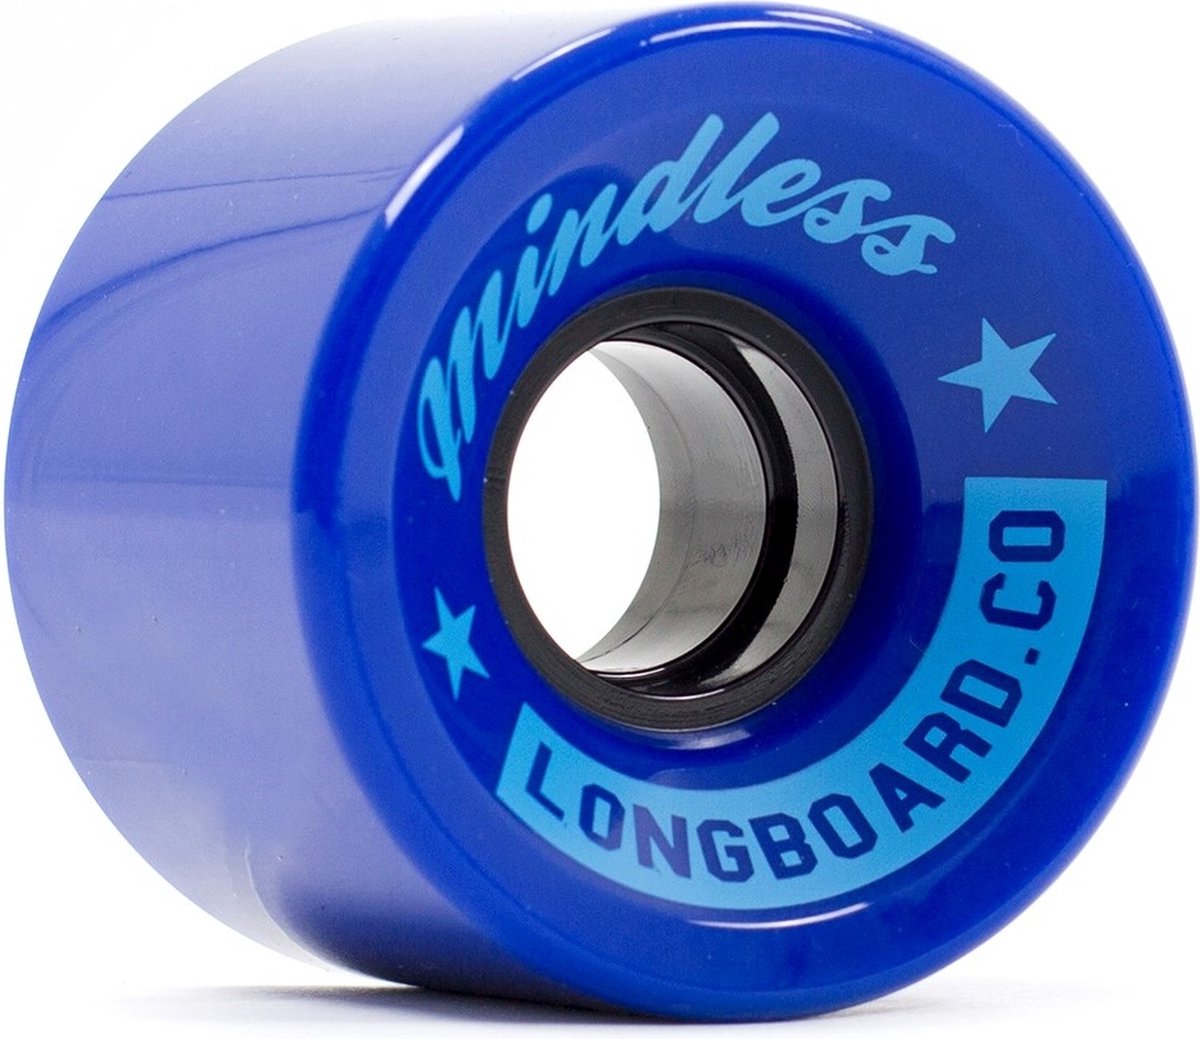 Mindless cruiser wielen 60mm donker blauw